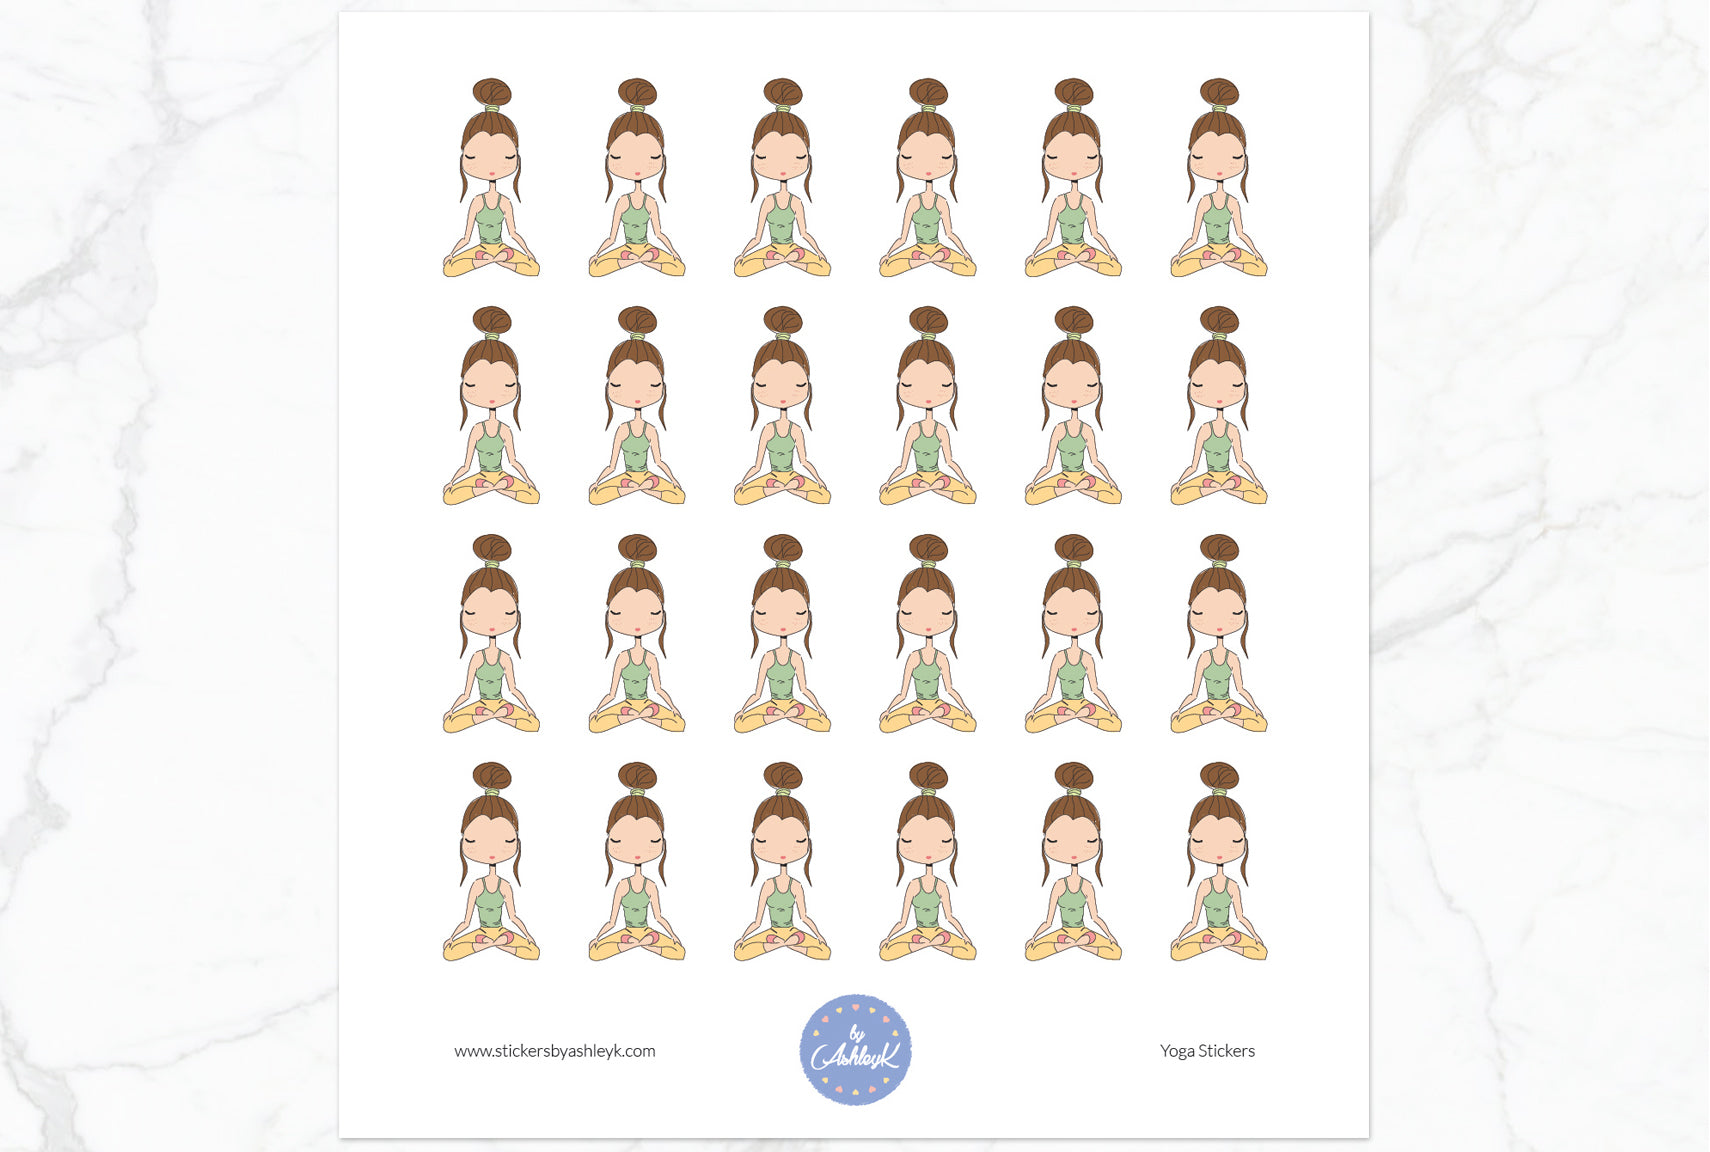 Yoga Stickers – Stickers by AshleyK